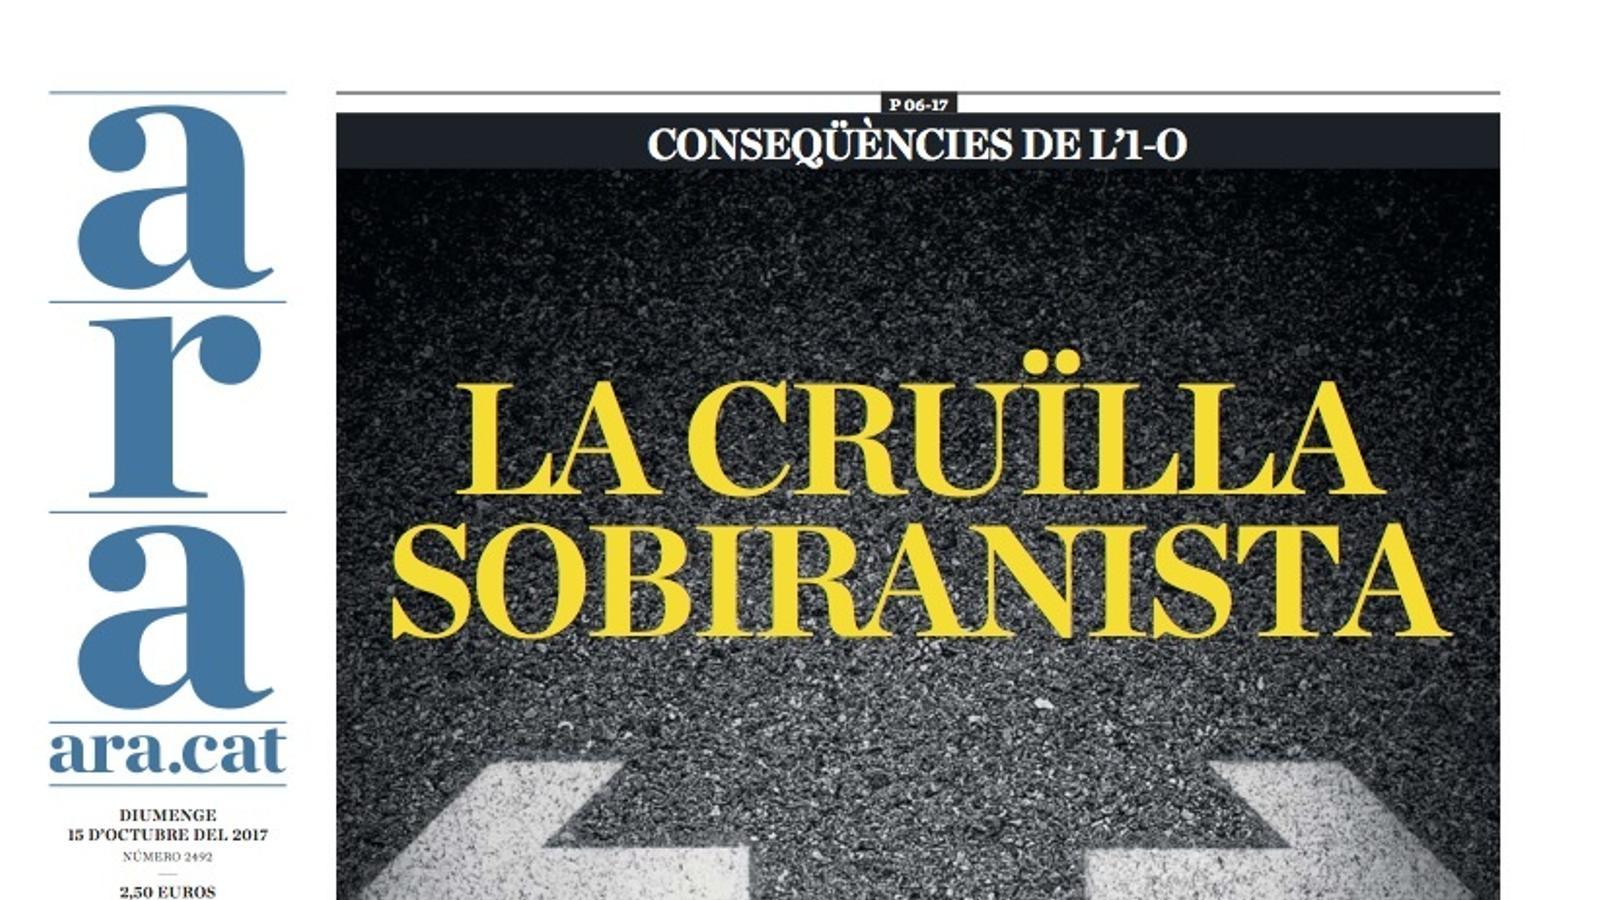 "La cruïlla sobiranista", portada de l'ARA